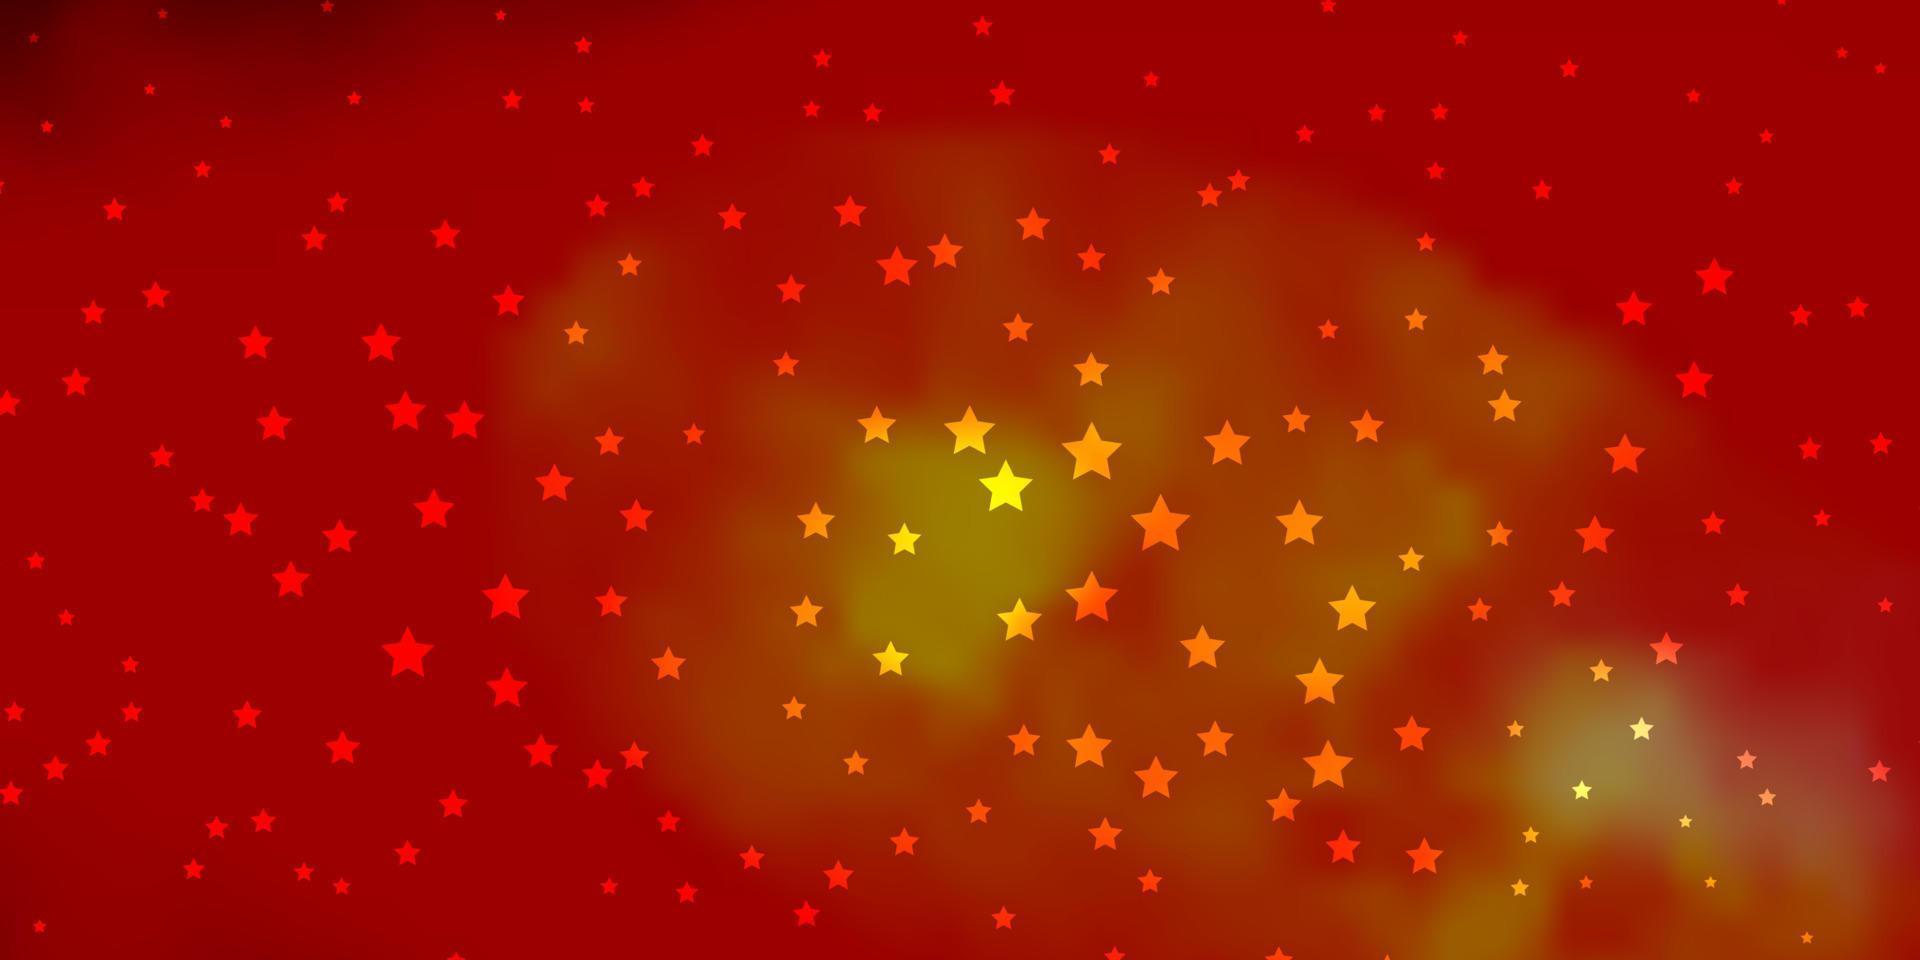 fond de vecteur rouge et jaune foncé avec des étoiles colorées.